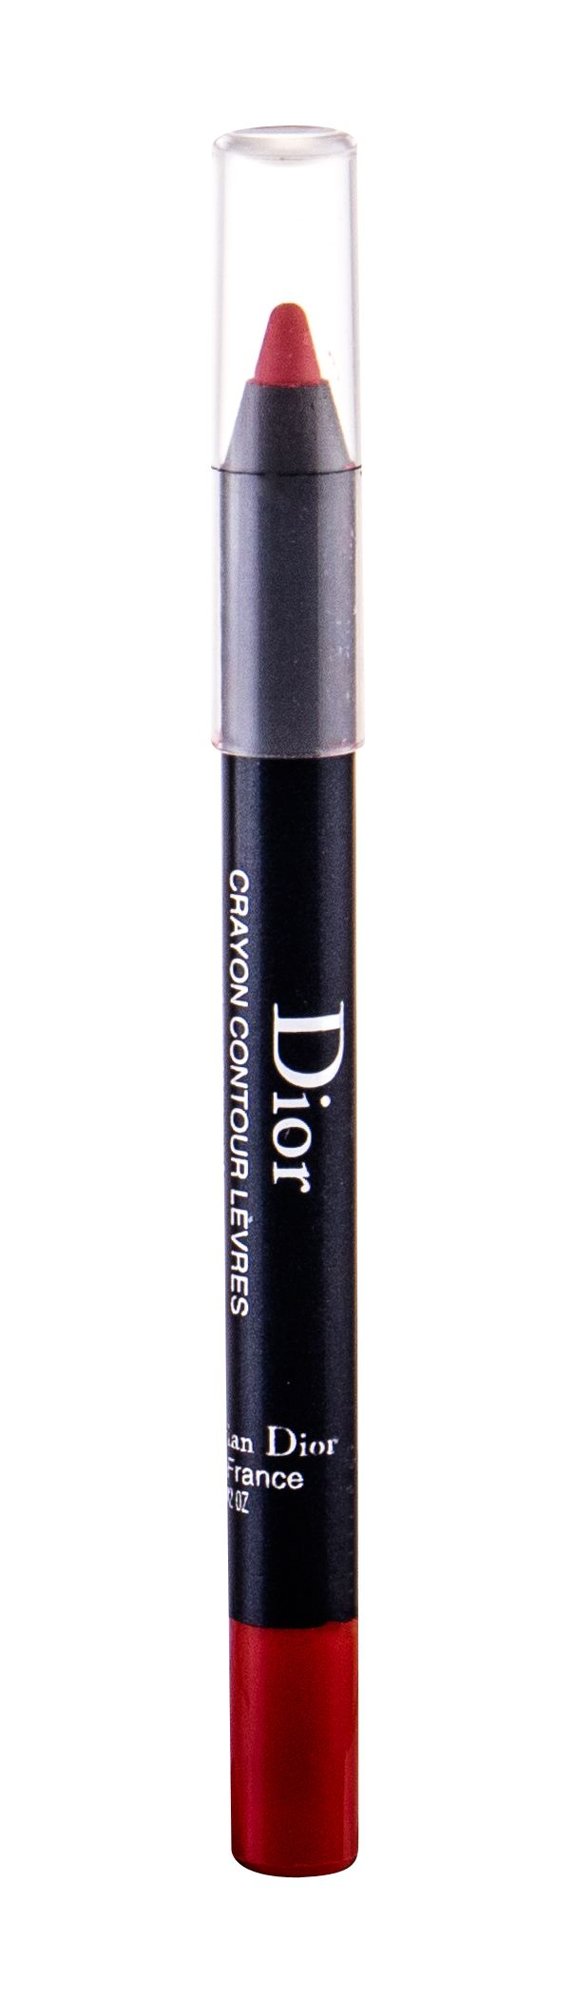 Christian Dior Lipliner Pencil 0,8g lūpų pieštukas Testeris